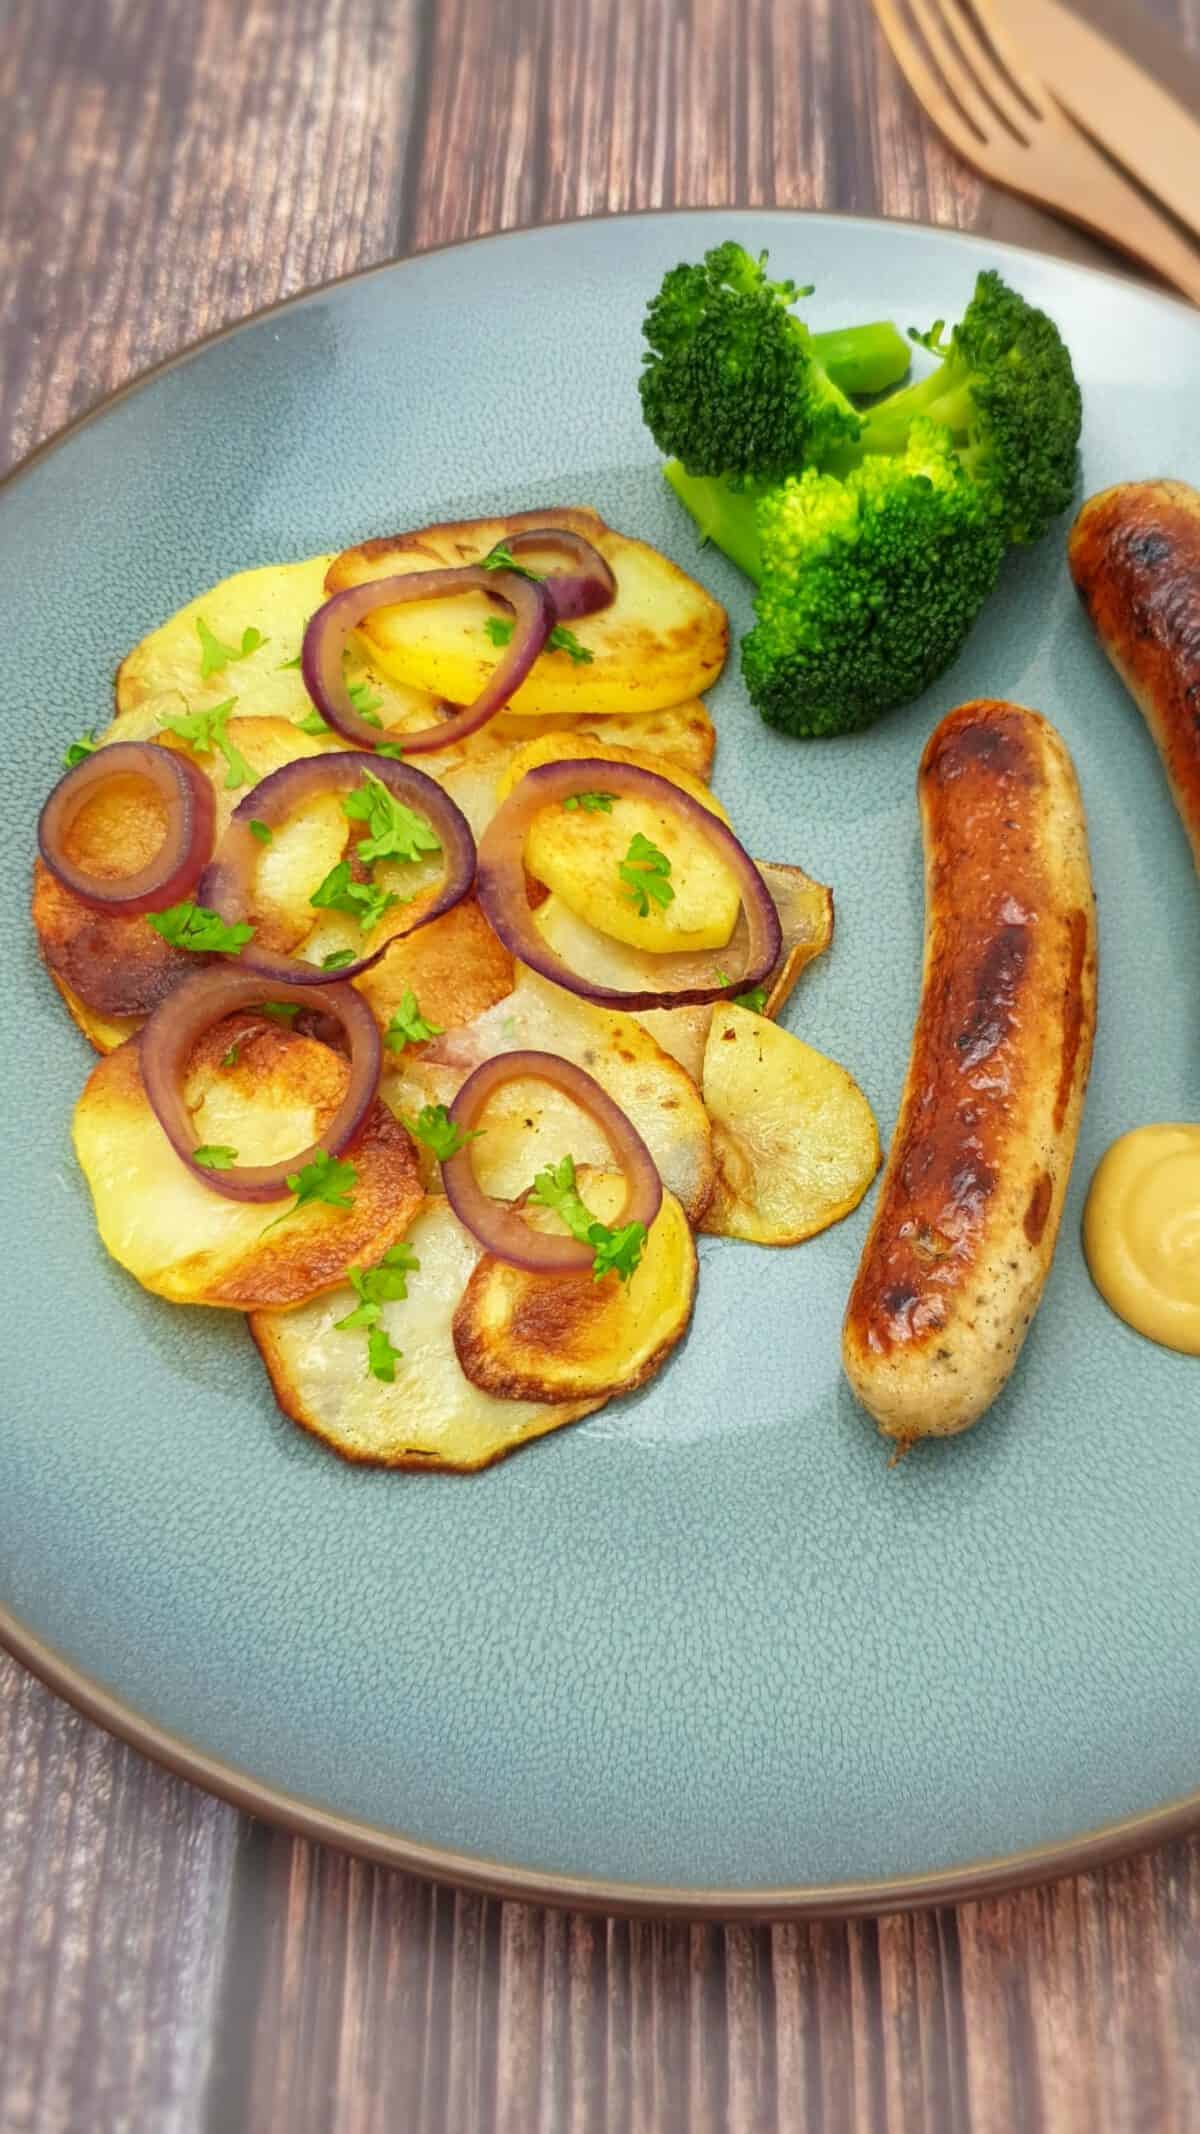 Knusprige Bratkartoffeln mit roten Zwiebel und einer Bratwurst auf einem blauen Teller.